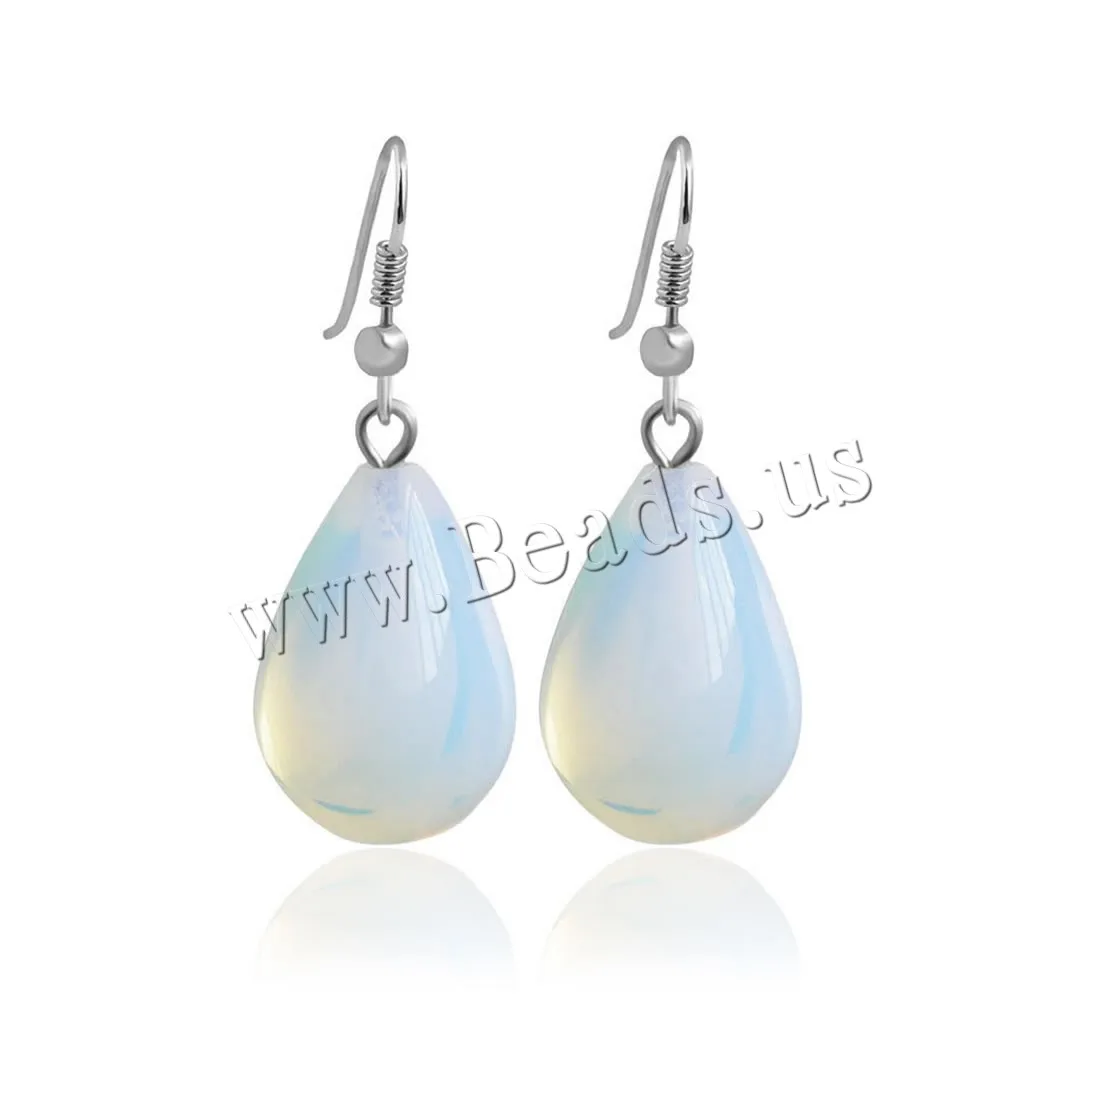 YYW Wholesale Jewelry Moonstone Teardrop Earrings White Sea Opal Drop Dangle Earrings for Women Gift Brincos Fashion Jewelry